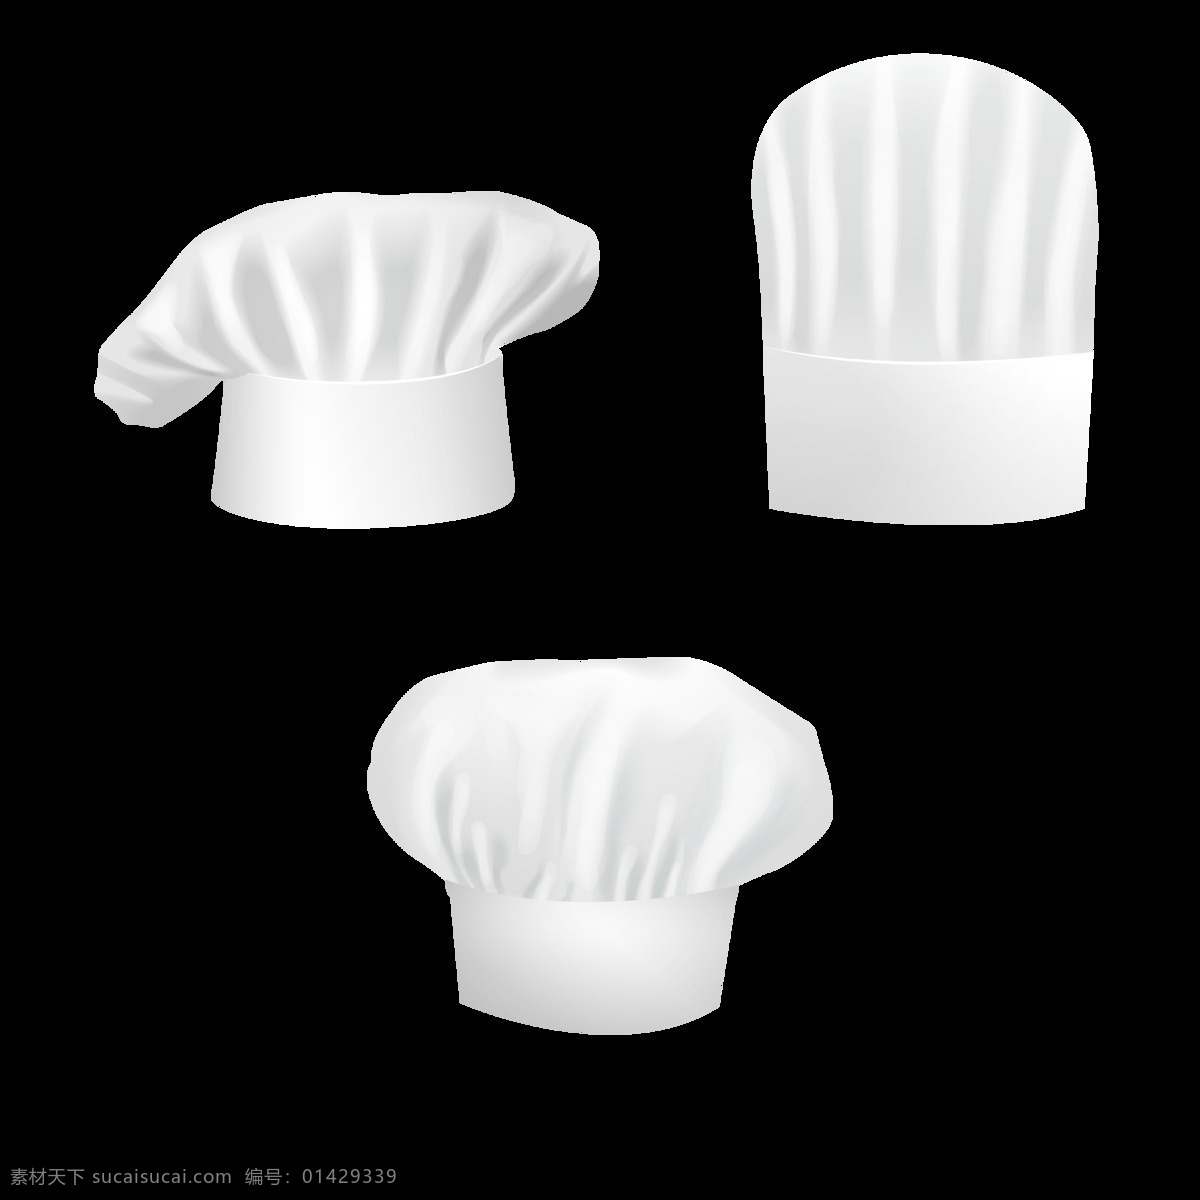 逼真 效果 厨师 帽 免 抠 透明 图 层 中餐厨师帽 西餐 logo 卡通厨师 厨师卡通 扁平 风格 手绘厨师帽 简约厨师帽 卡通厨师帽 各种厨师帽 白色厨师帽 厨师帽